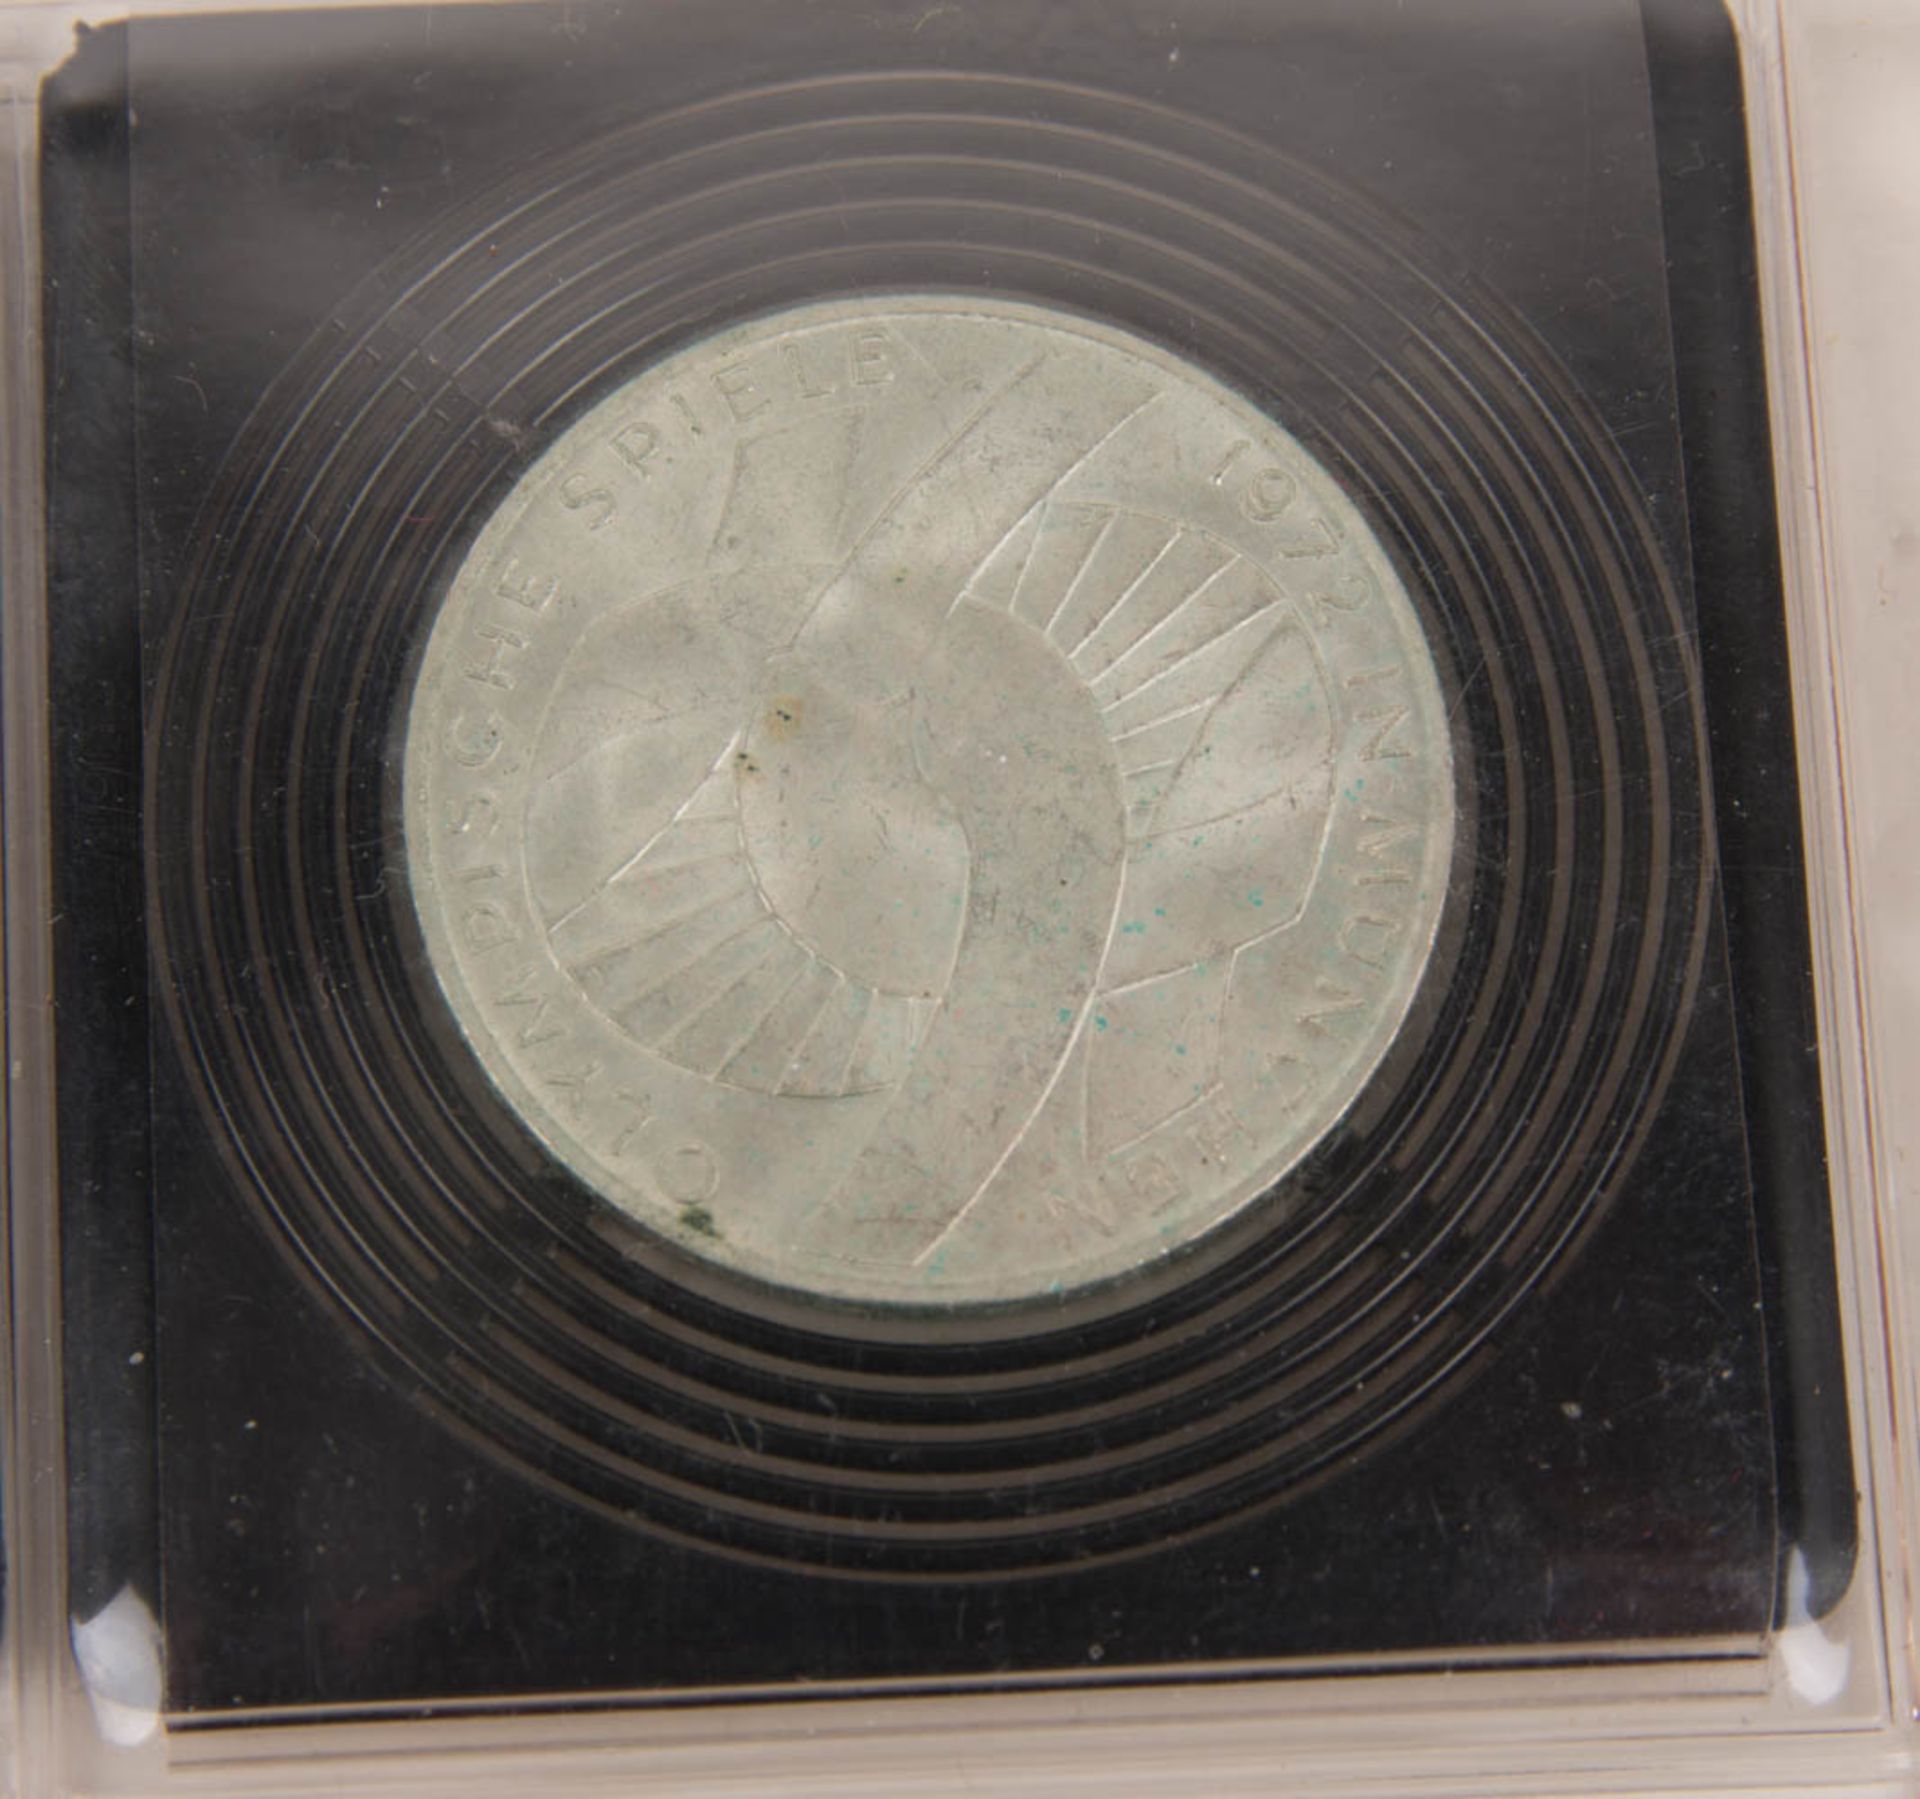 BRD, Drei 10-DM-Silbergedenkmünzen, Olympiade 1972. - Bild 2 aus 7